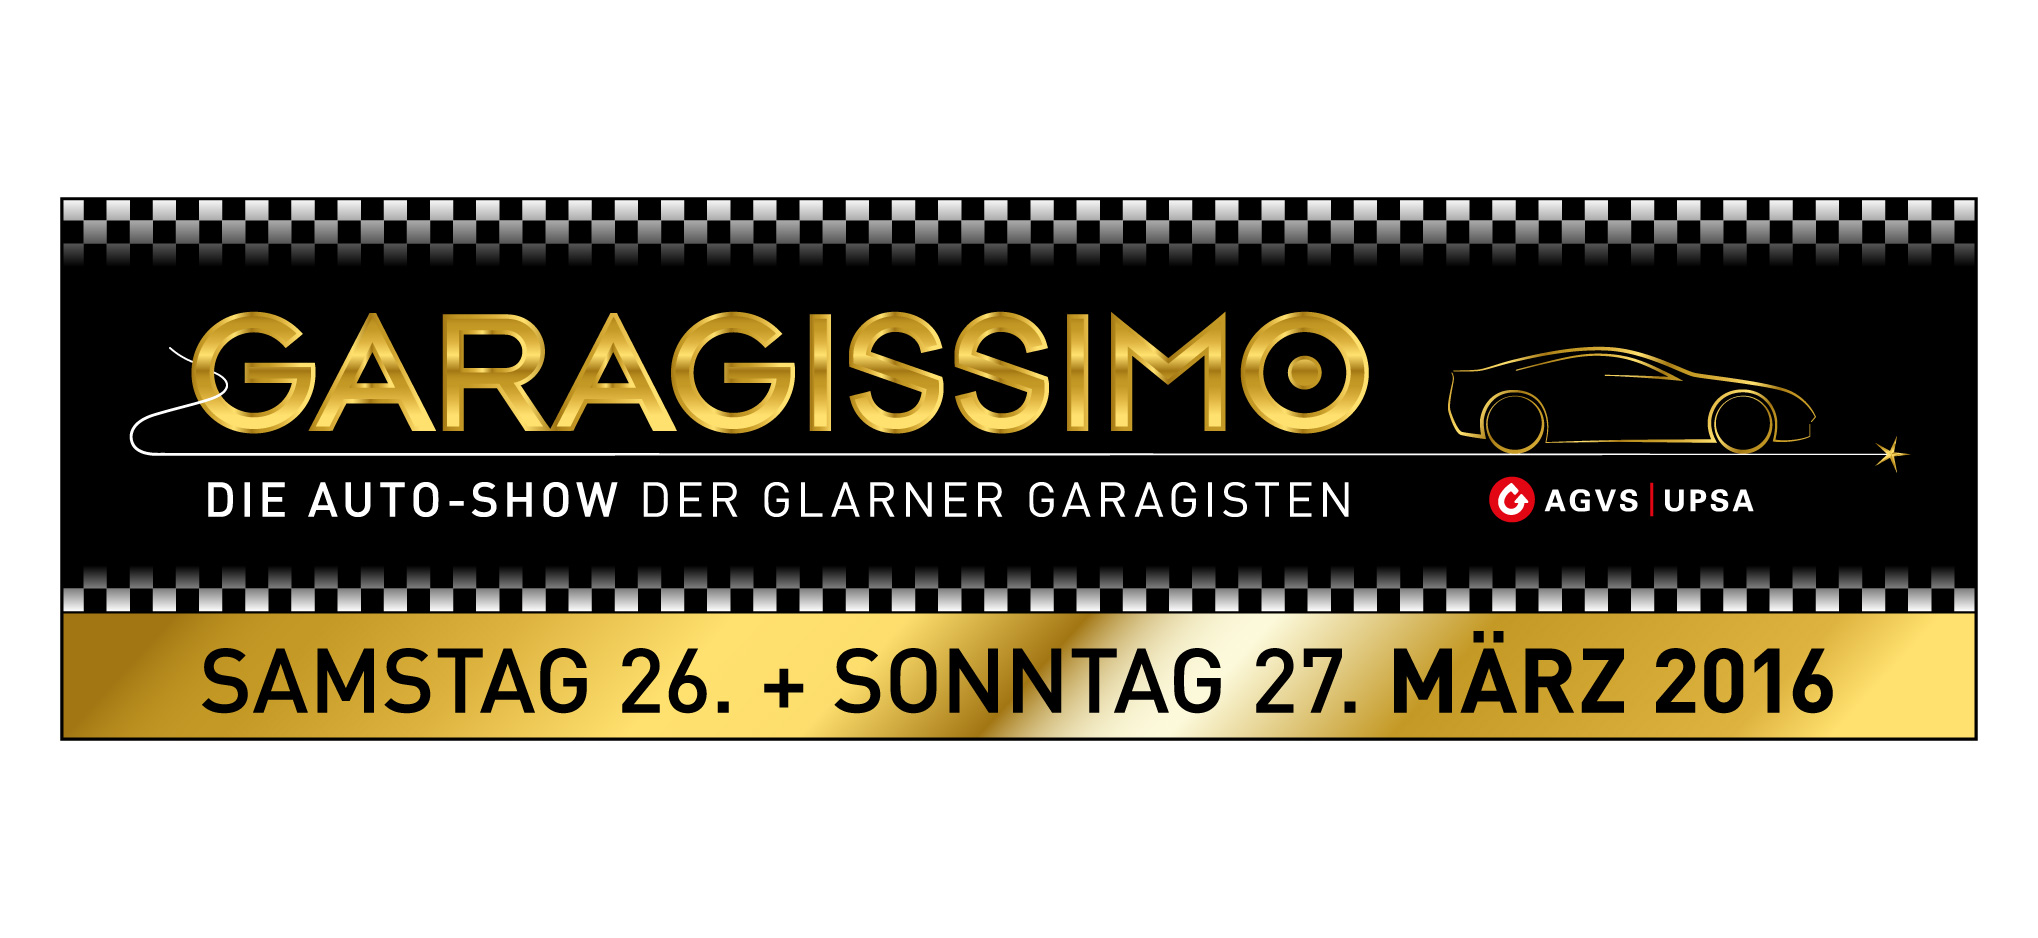 Banner Garagissimo - Die Auto-Show der Glarner Garagisten